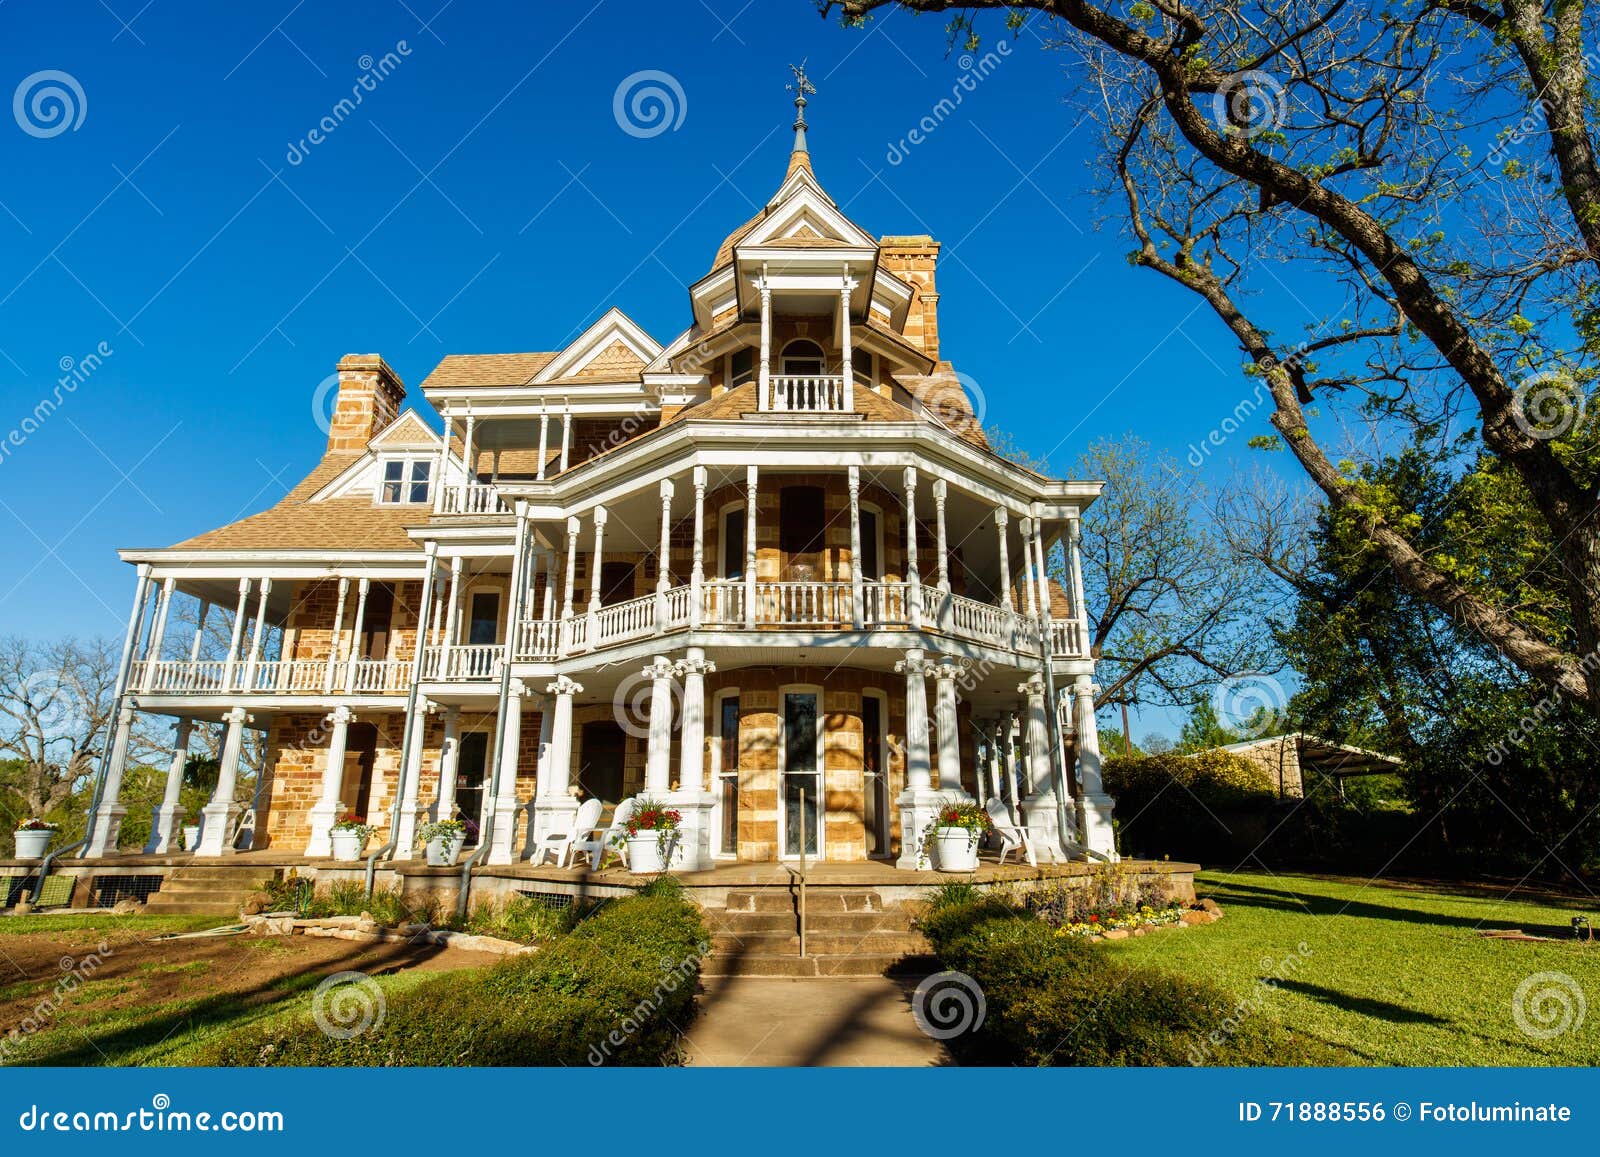 Όμορφο εκλεκτής ποιότητας σπίτι. Mason, Τέξας ΗΠΑ - 2 Απριλίου 2016: Το σπίτι Seaquist, που χτίζεται το 1896, είναι ένα όμορφο βικτοριανό ιστορικό σπίτι ύφους σε αυτήν την μικρή πόλη του Τέξας στη χώρα λόφων